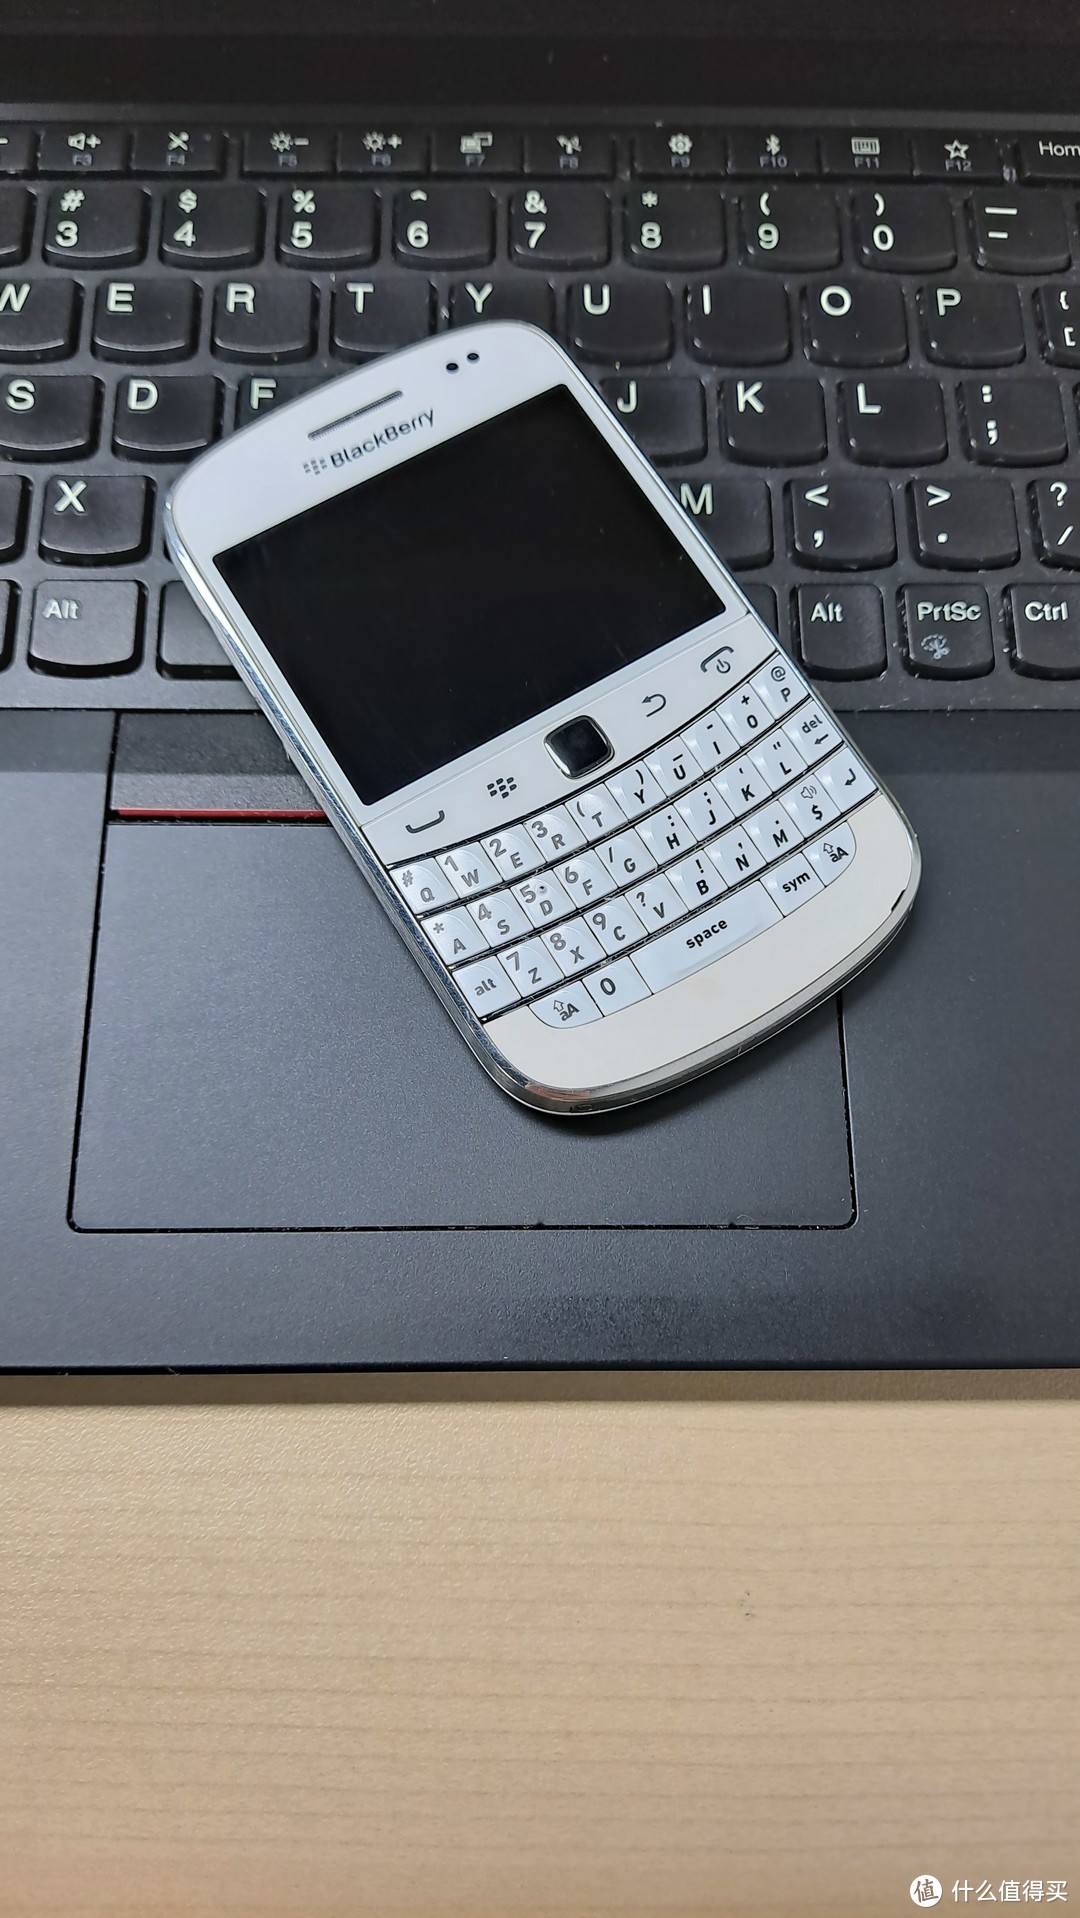 全键盘手机的巅峰一定是黑莓，黑莓的巅峰机型绝对是9900-记我的老宝贝儿黑莓9900